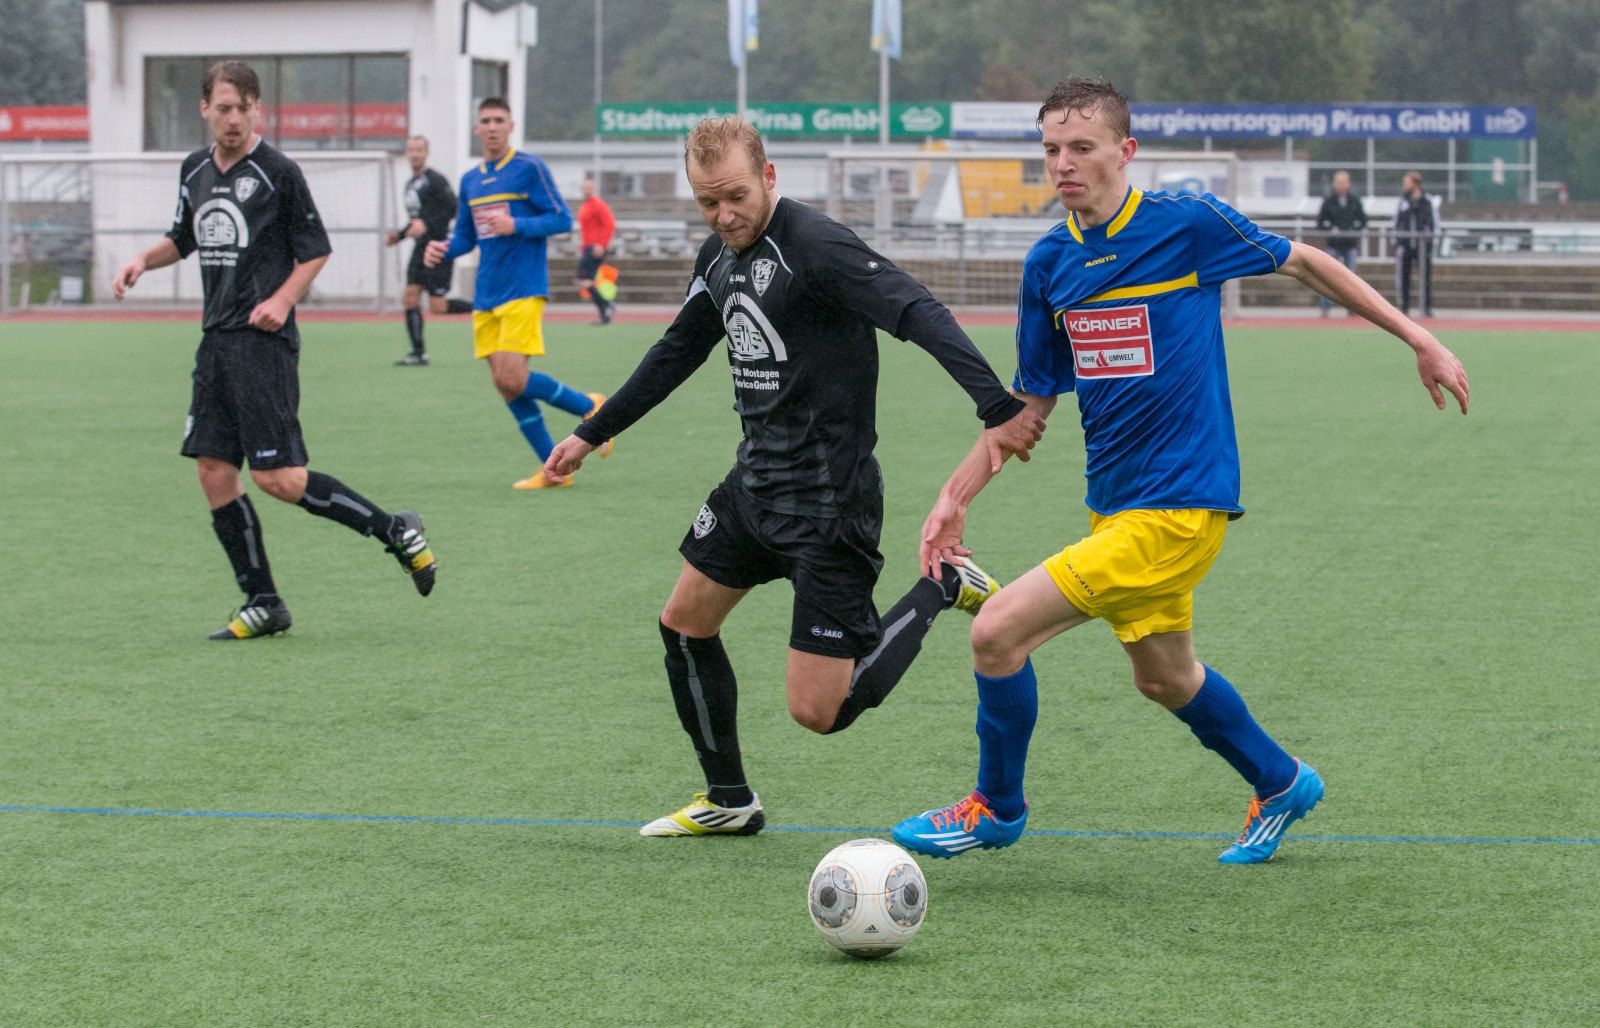 John Braun und die VfL-Defensive setzen den Gegner unter Druck. Foto: Marko Förster